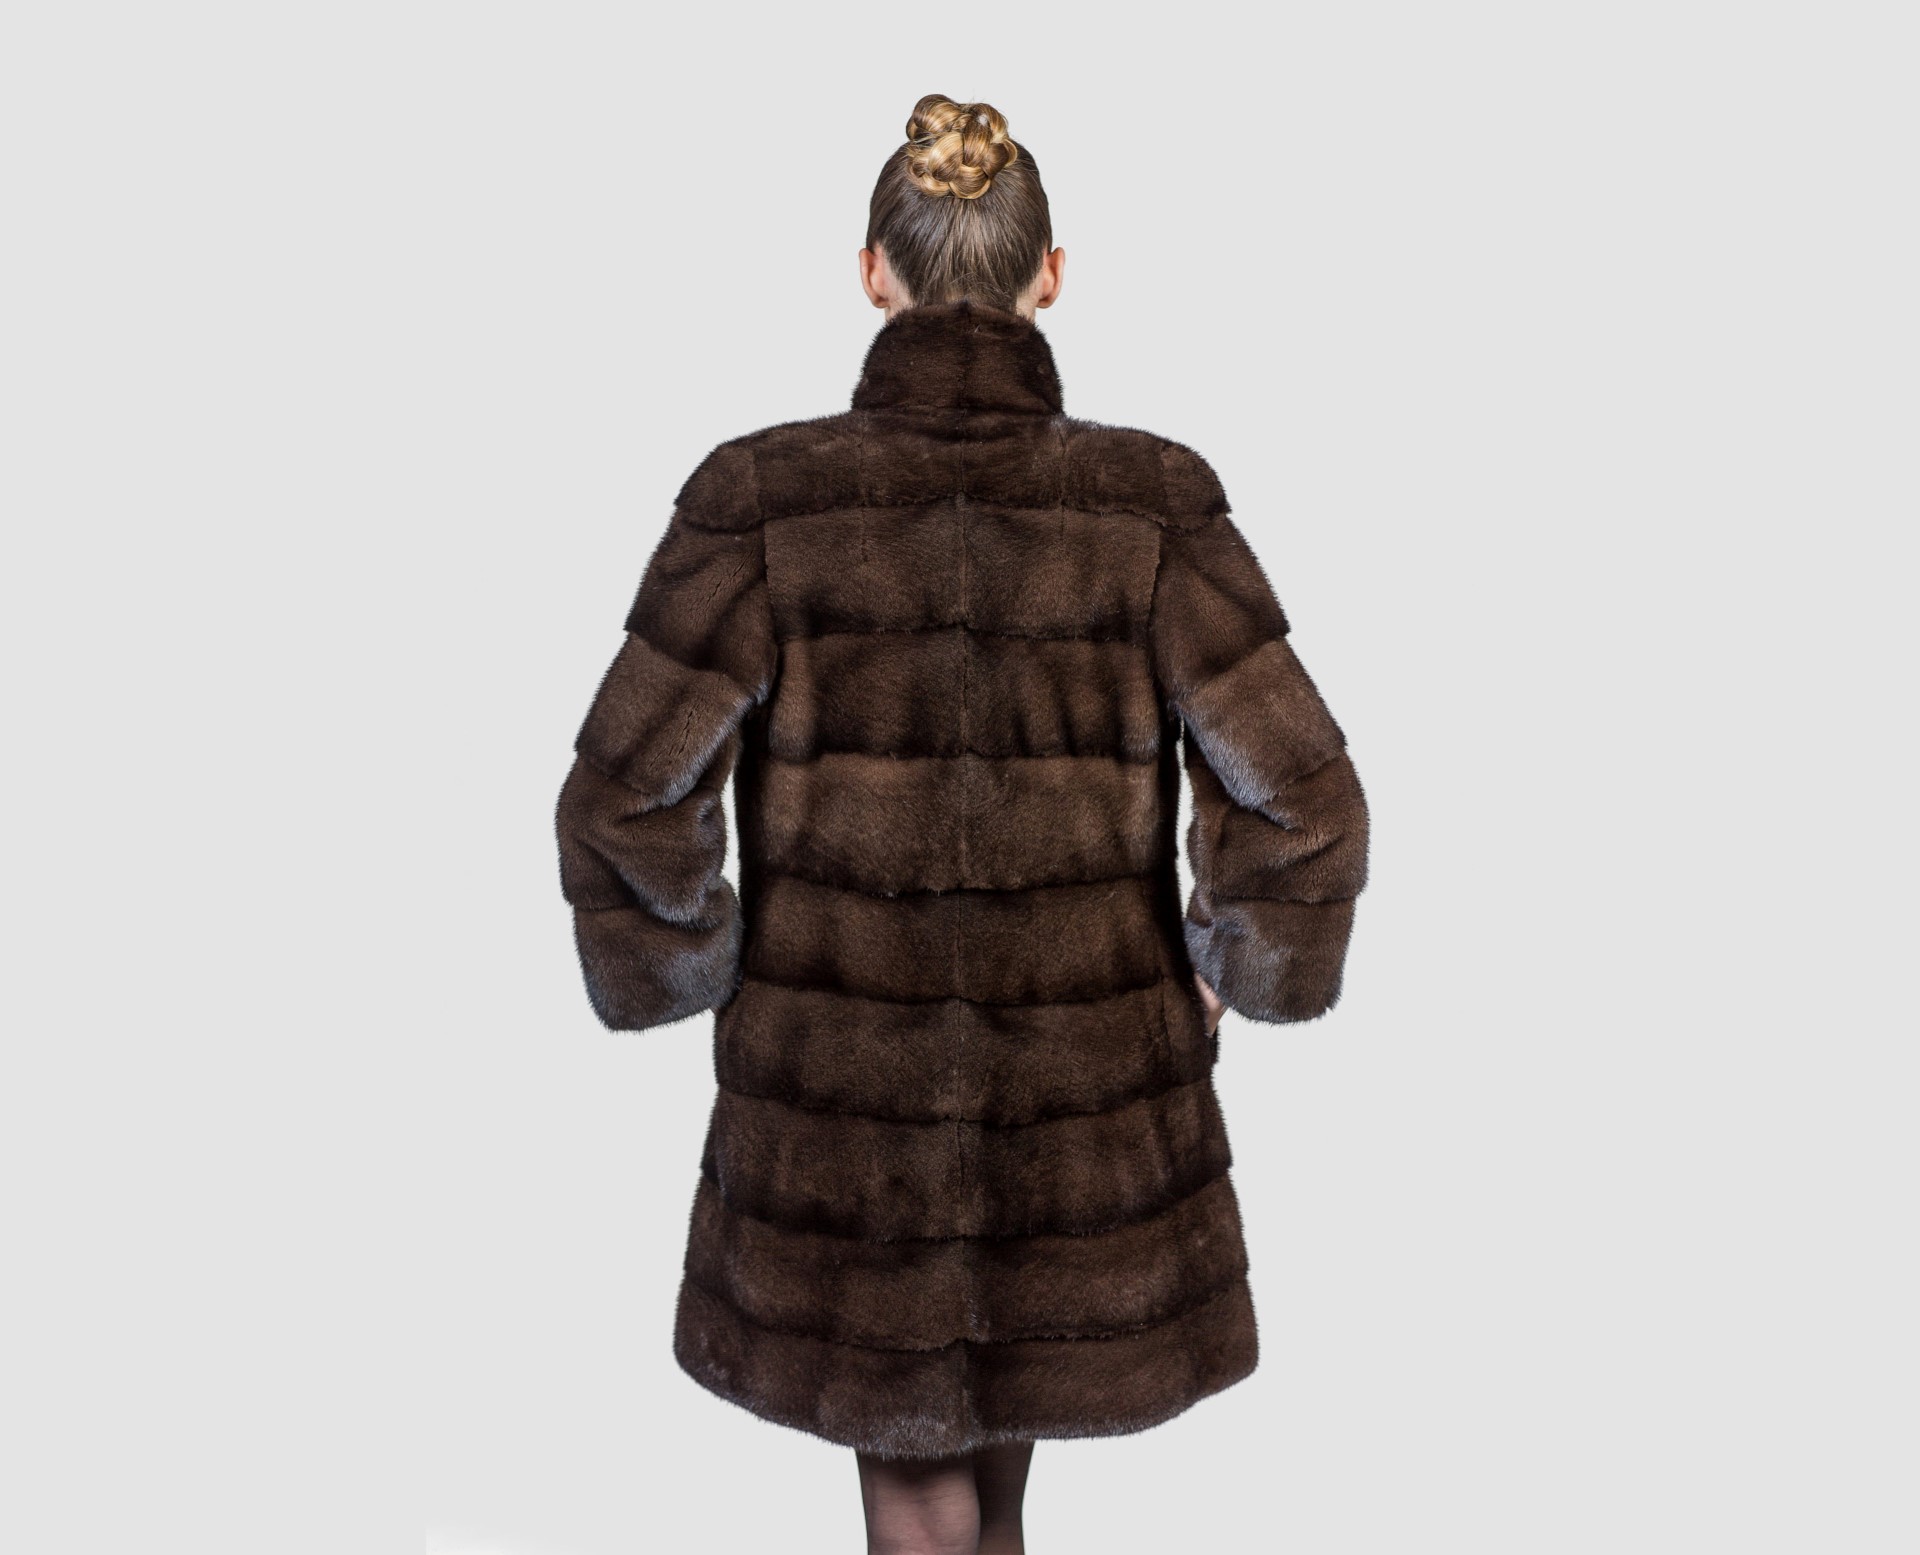 Mahogany Mink Fur Coat. 100% Real Fur Coats and Accessories.